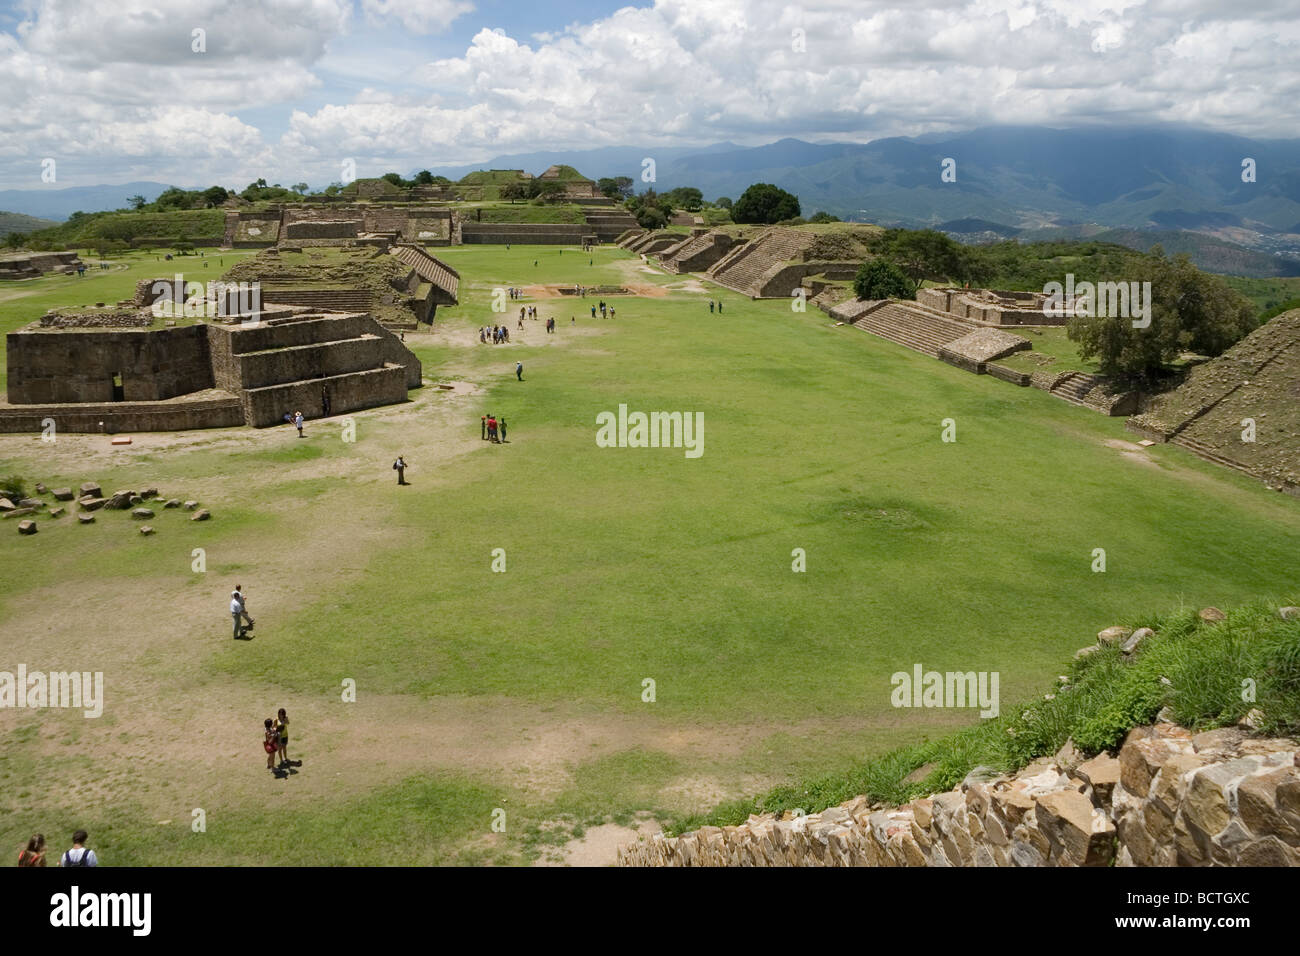 Monte Alban Ruine Standort Oaxaca, Mexiko, Stein 500 v. Chr. - 750 n. Chr. die älteste steinerne Stadt in Mexiko, Zapoteken Bauherren, pyramidenförmige Plattformen Stockfoto